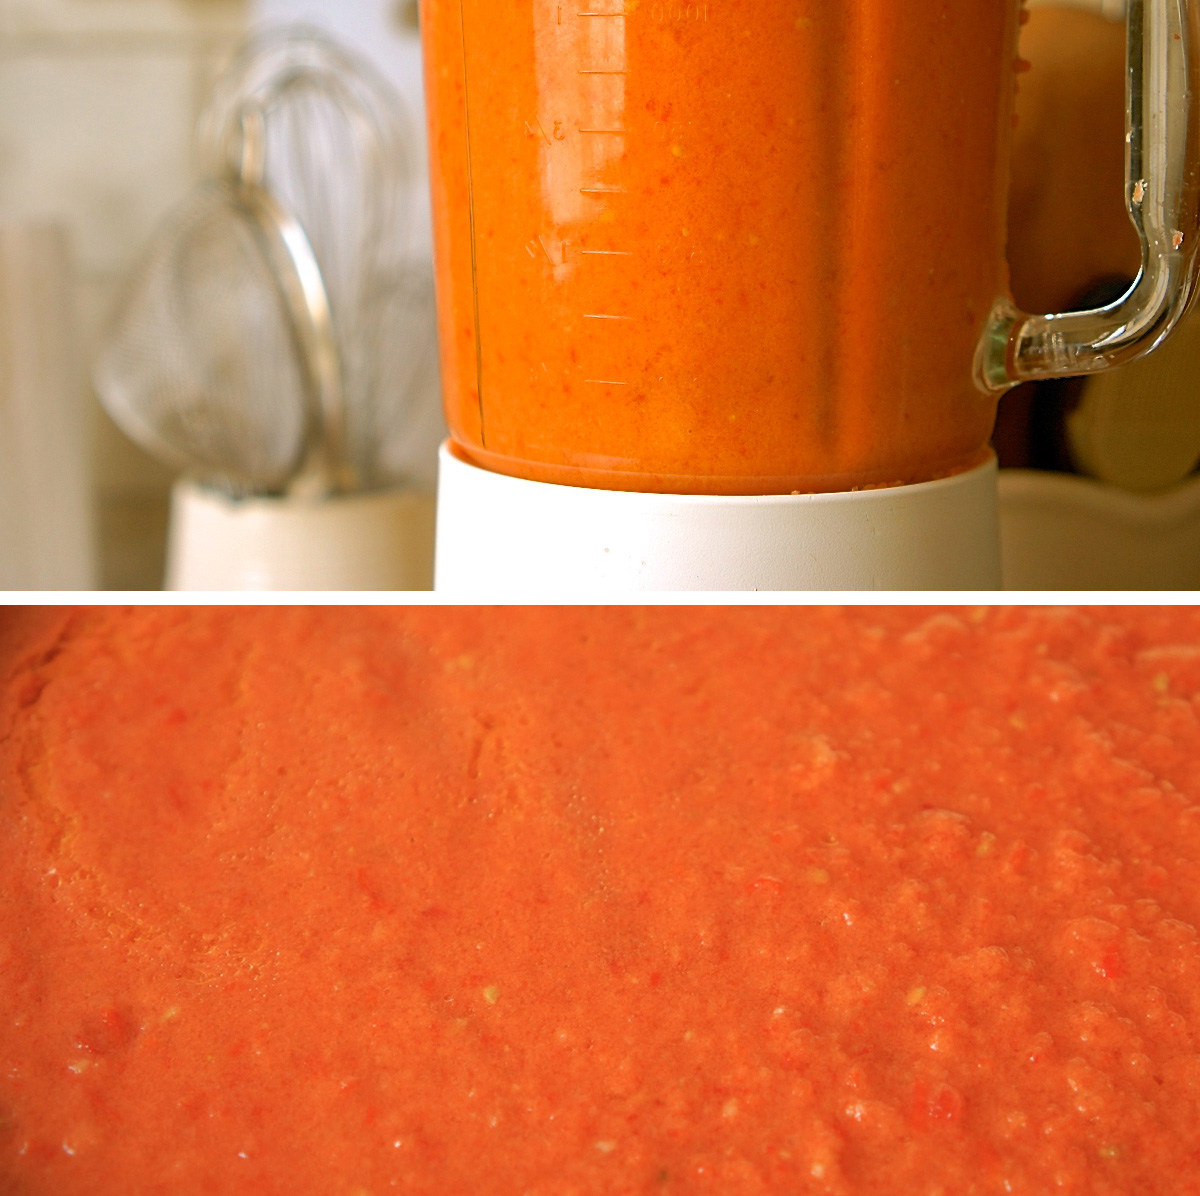 גספצ'ו, מרק עגבניות קר - גבישס, בלוג האוכל של מירב גביש